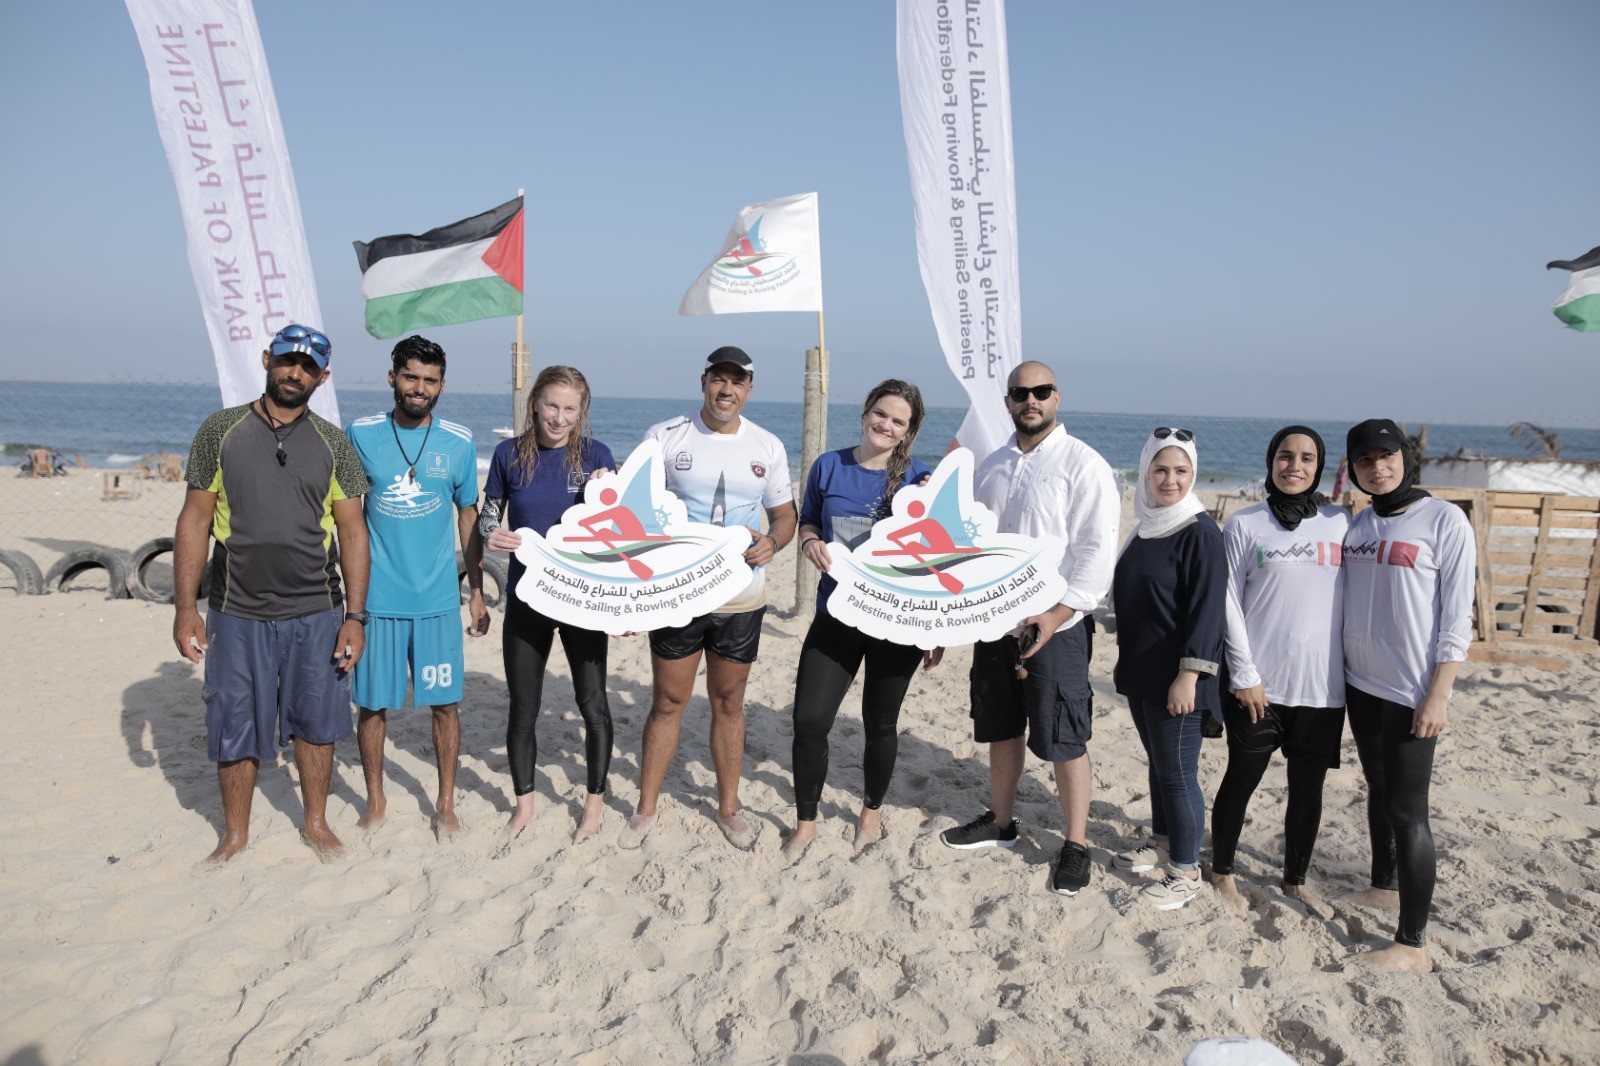 وفد من الاتحاد الأوروبي يمارس رياضة التجديف على شاطئ بحر غزة بدعوة من اتحاد الشراع والتجديف 2.jpg